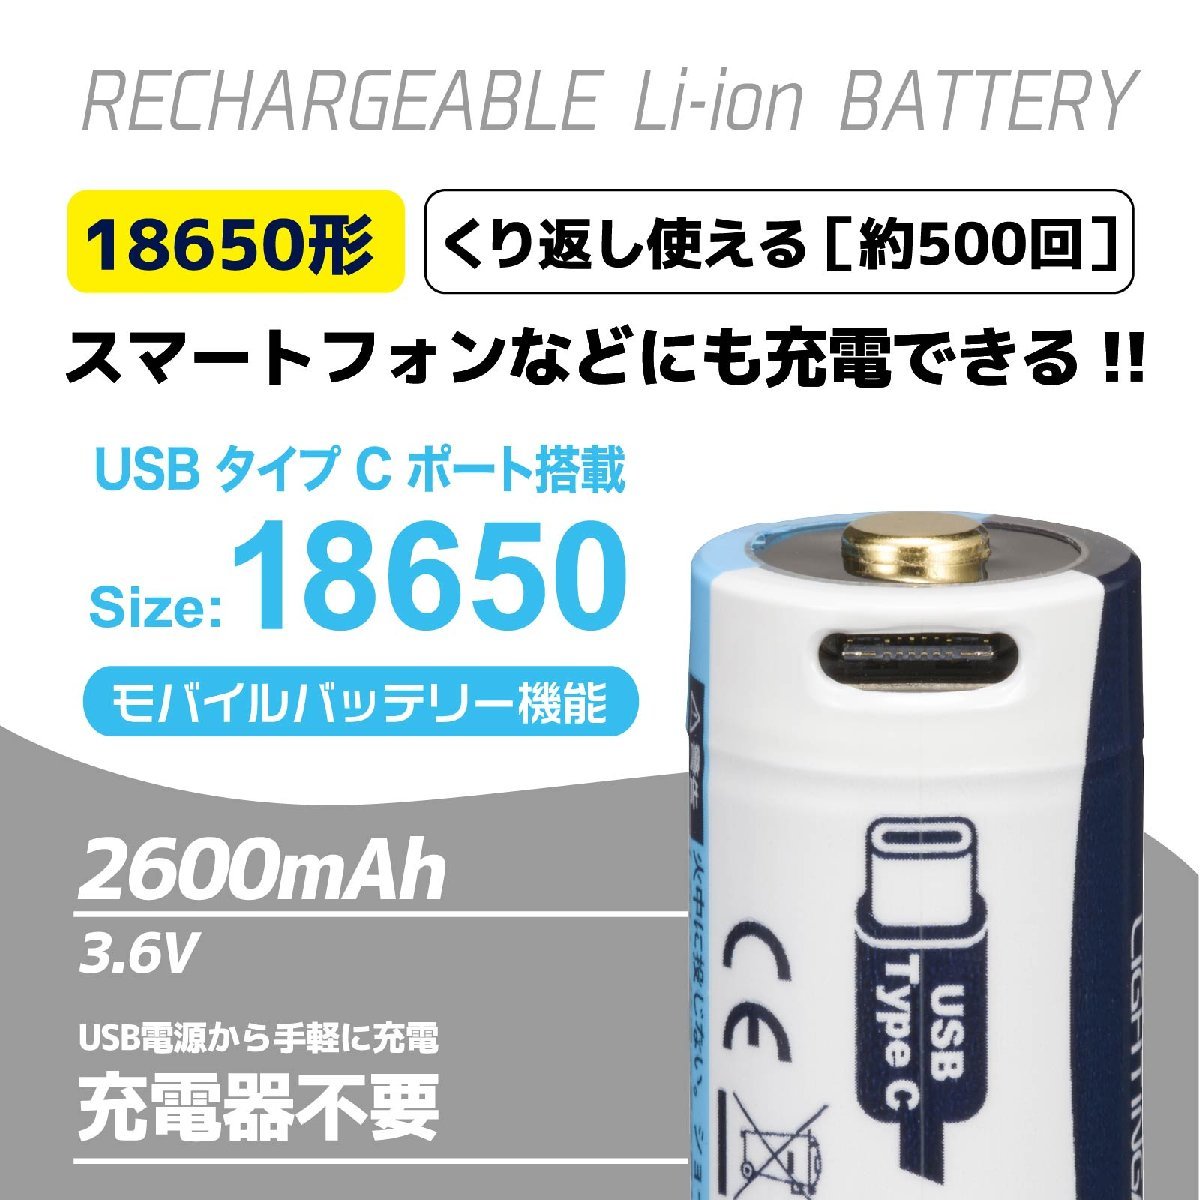 リチウムイオン電池 USB充電式リチウムイオン電池 18650形 2600mAh｜BTJ-1865026-LIT 08-1312 オーム電機_画像2